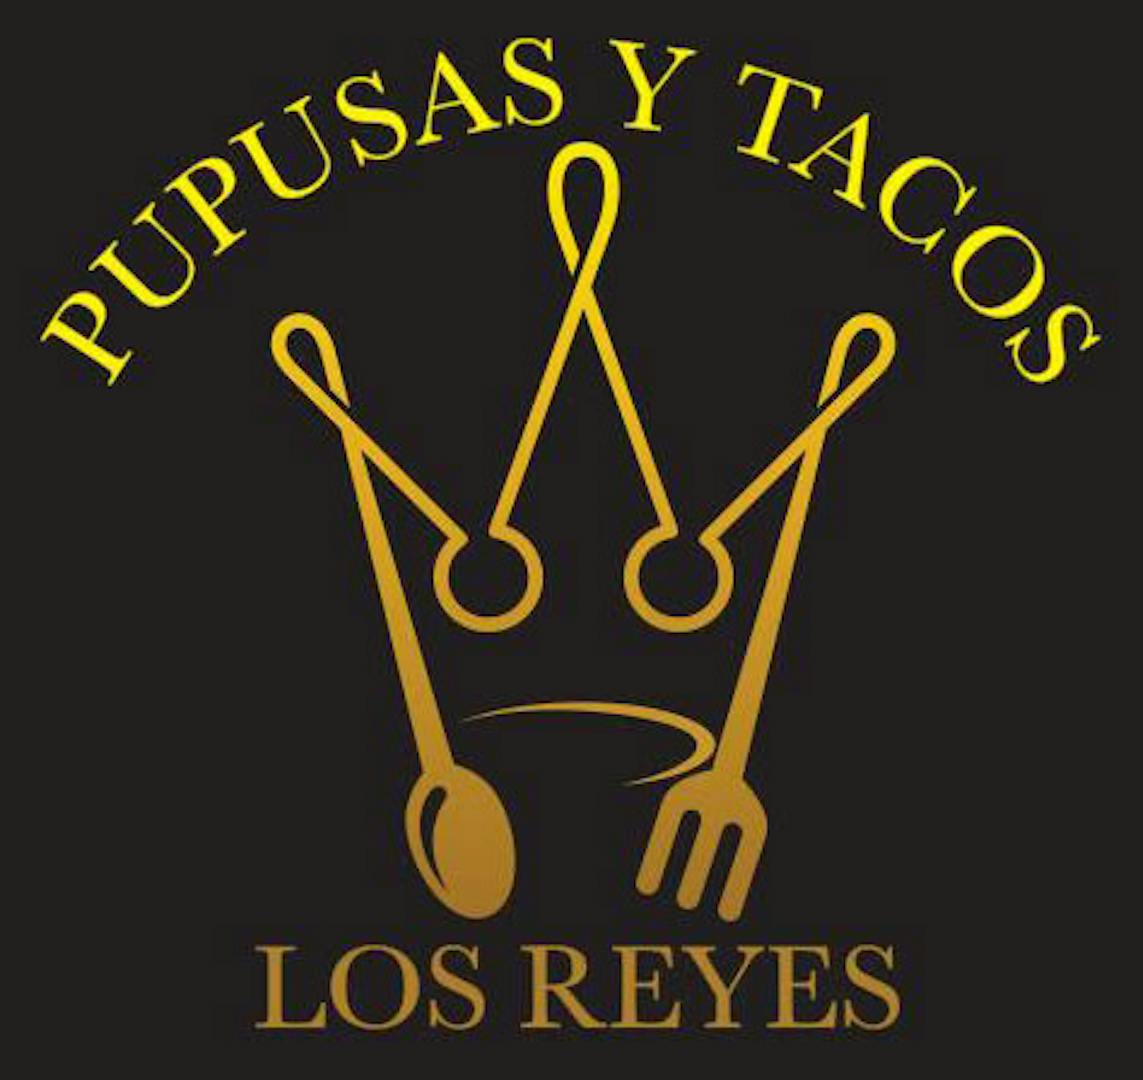 www.pupusasytacoslosreyes.com